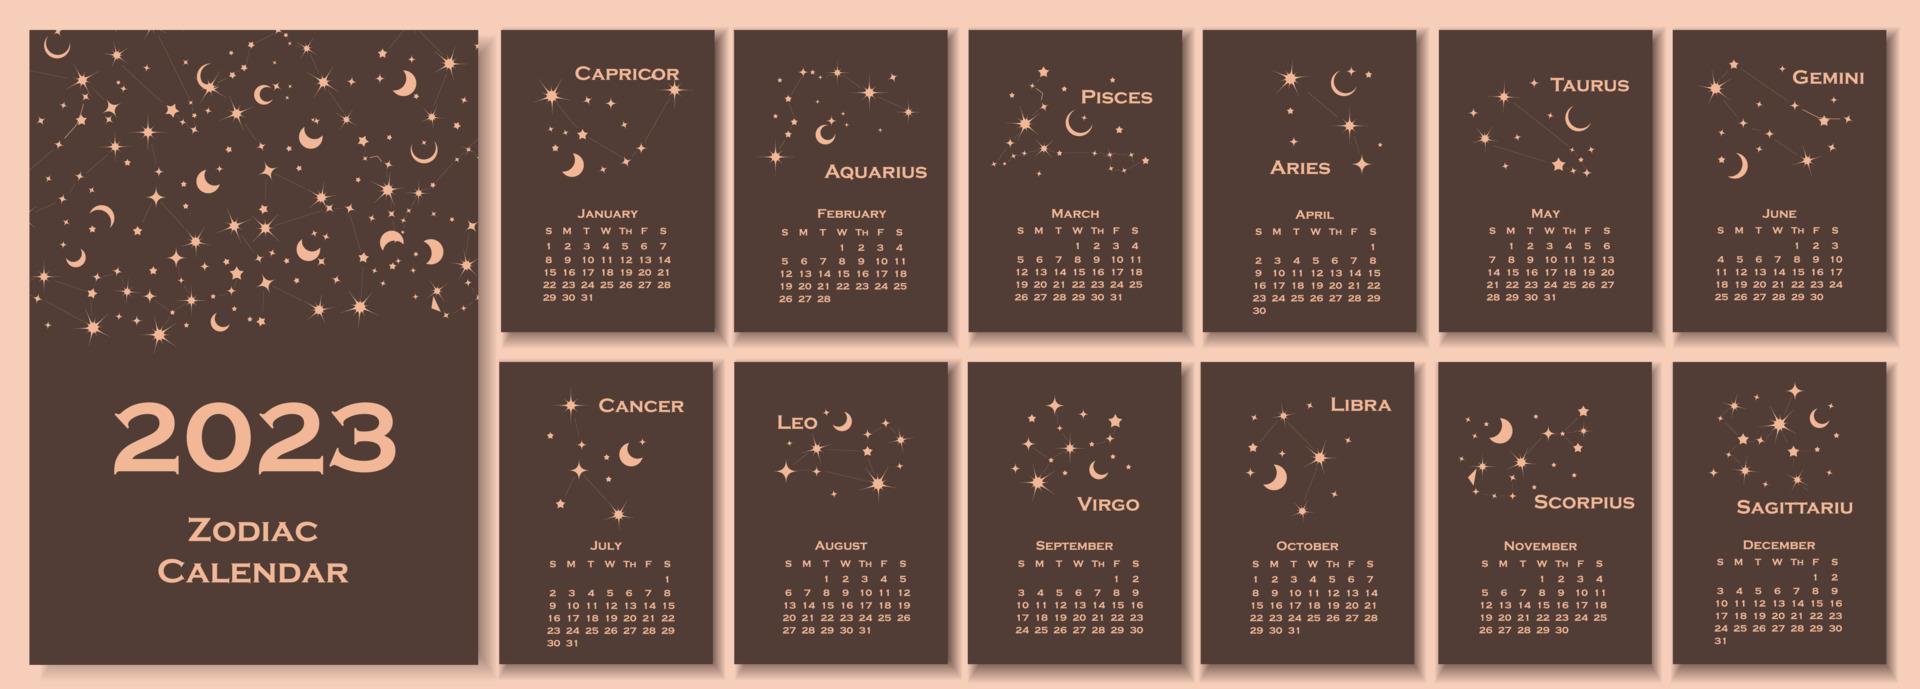 calendario 2023. diseño de concepto de calendario con constelación del zodíaco. ilustración vectorial conjunto de 12 páginas de calendario. vector